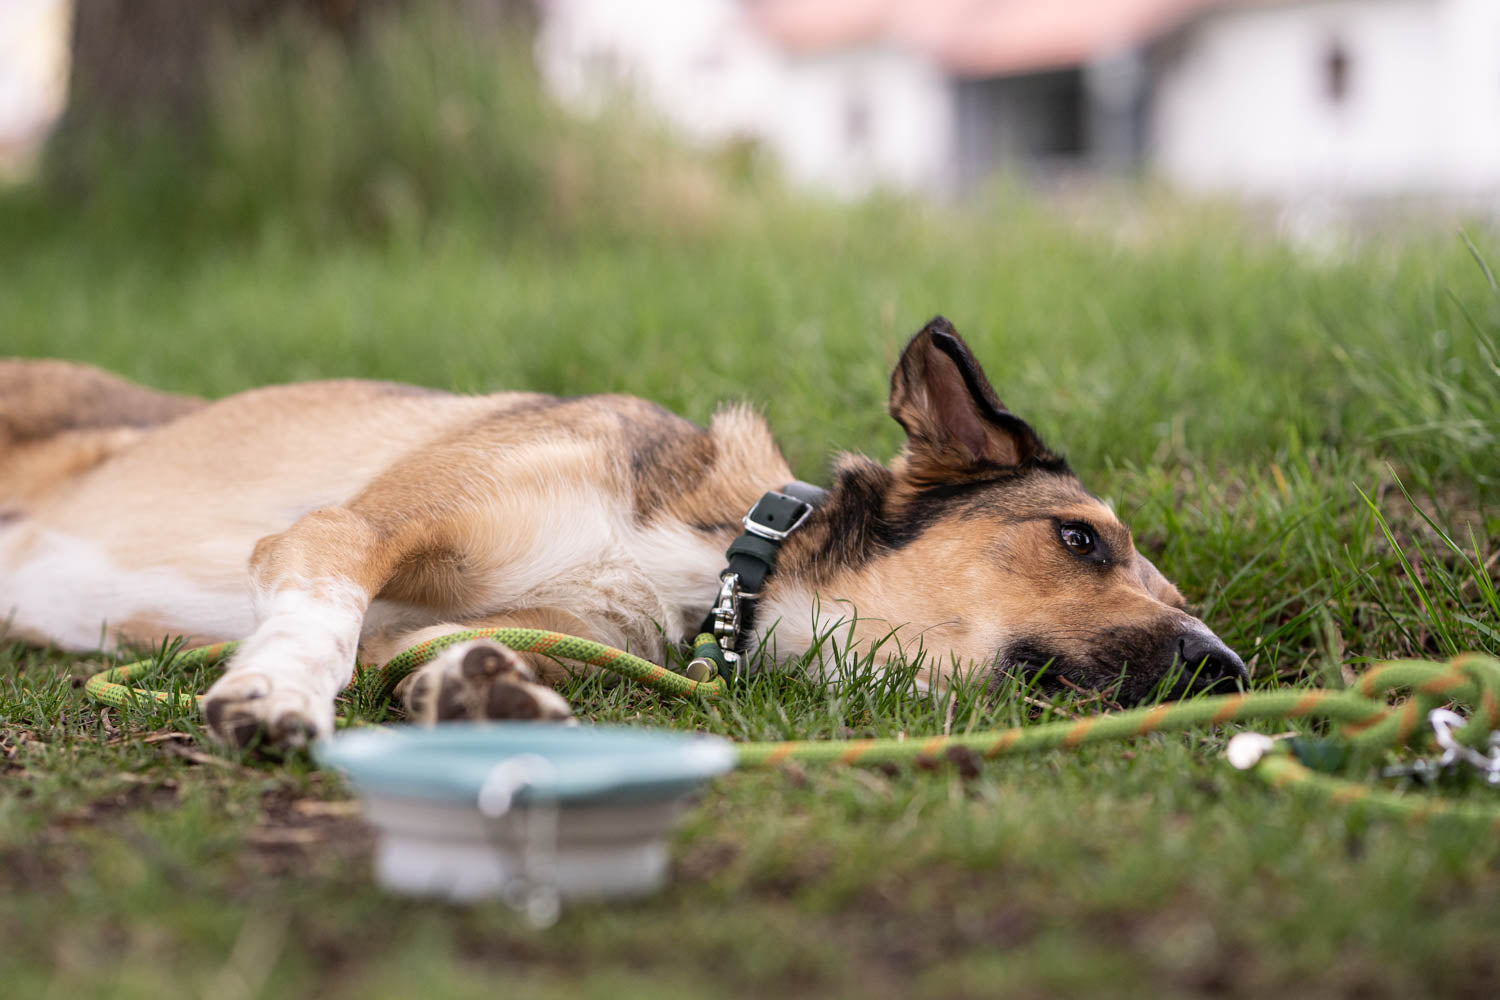 Dieses Bild ist Teil von dem Blogbeitrag 'Erste Hilfe für Hunde - Was tun bei Atemnot, Schock oder Wunden?' Es zeigt einen Hund nach viel Anstrengung.